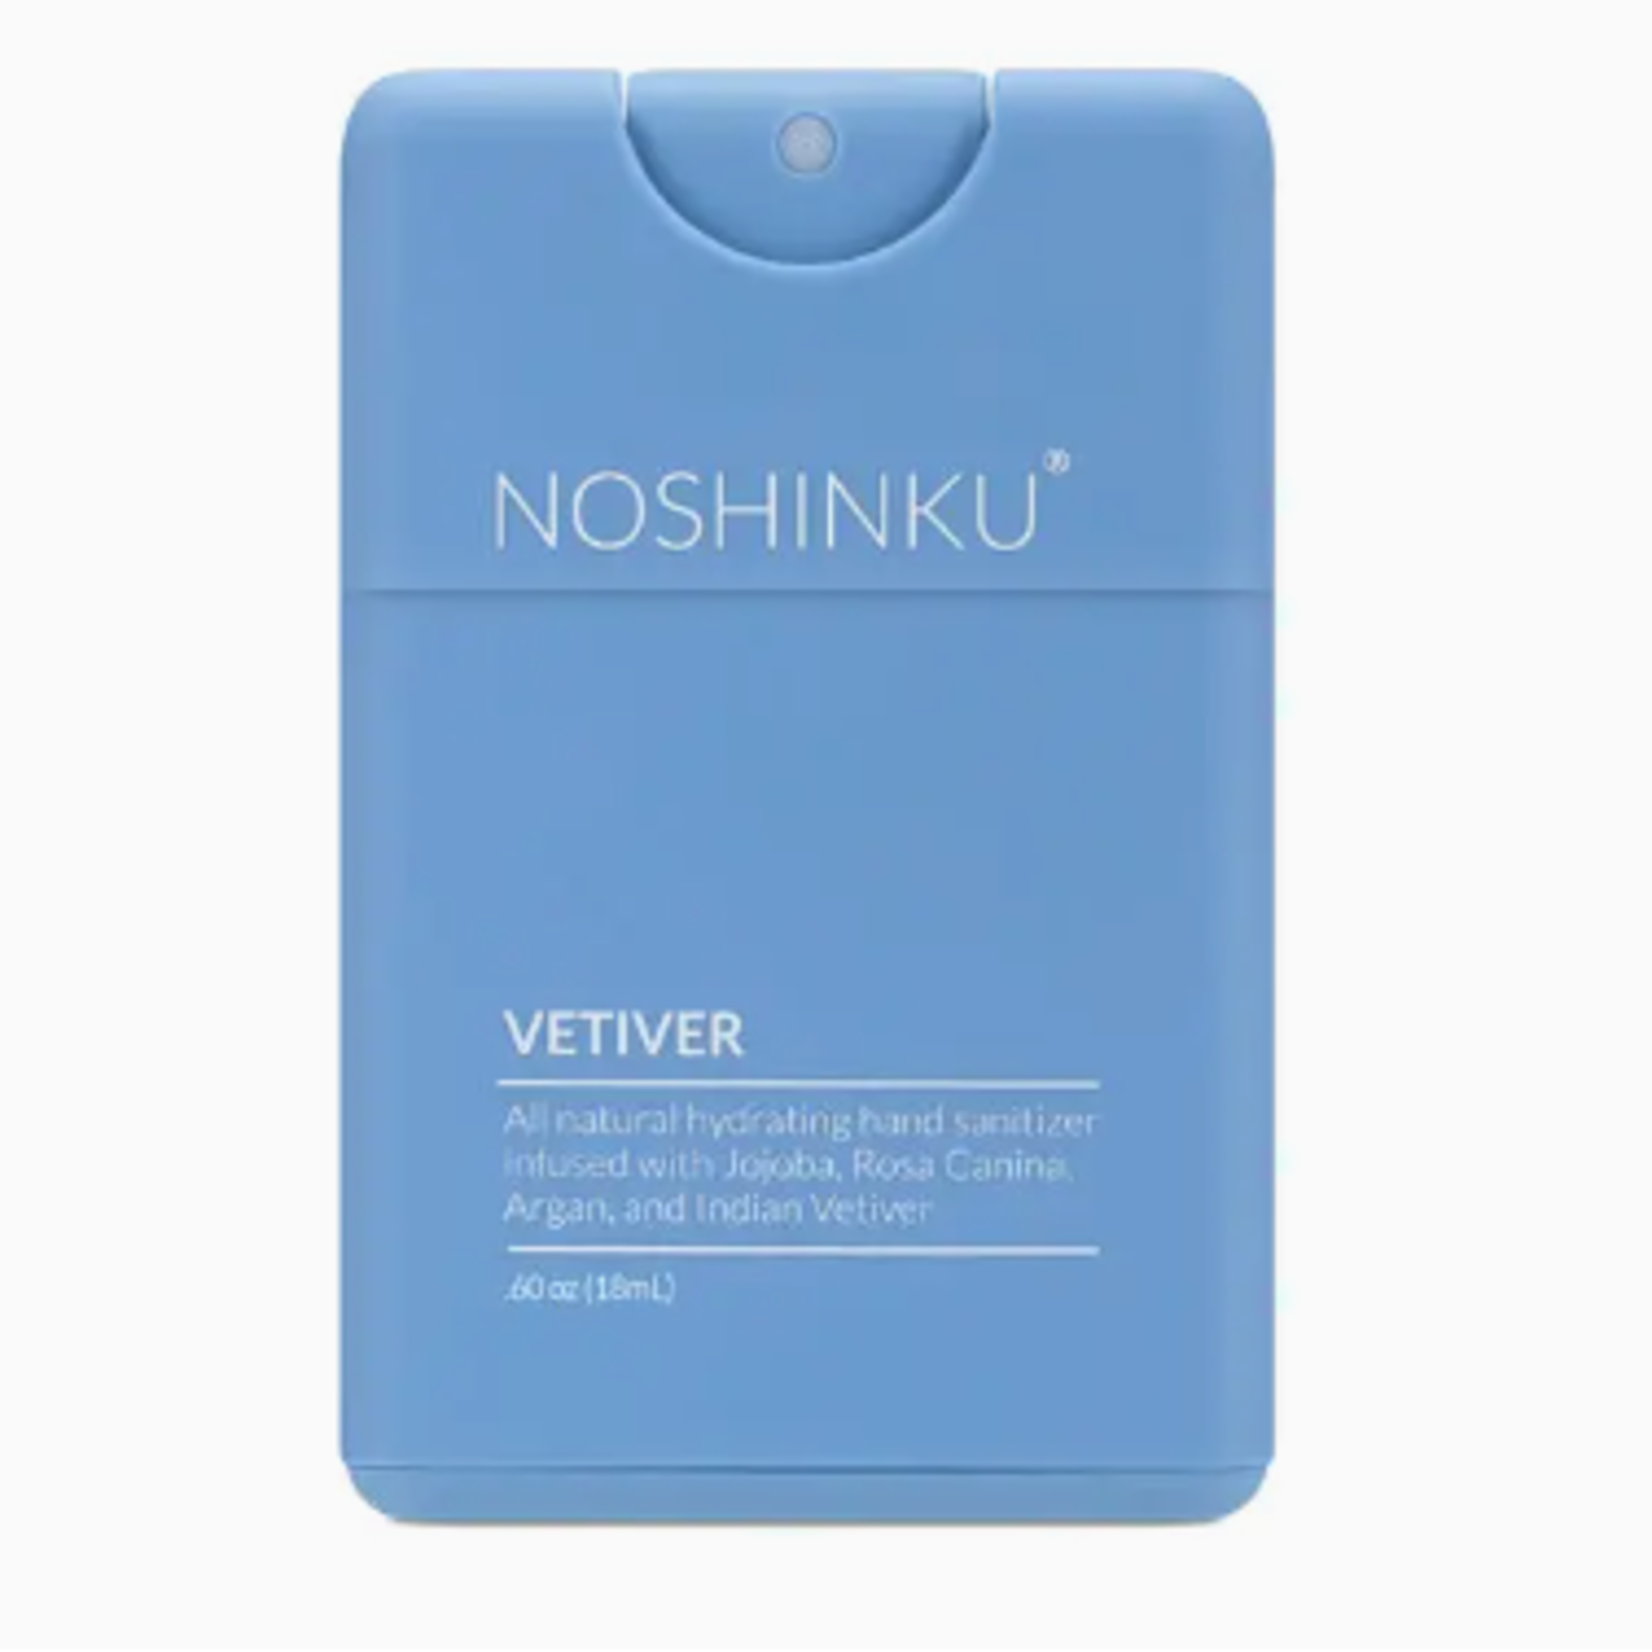 Noshinku Vetiver Nourishing Pocket Sanitizer